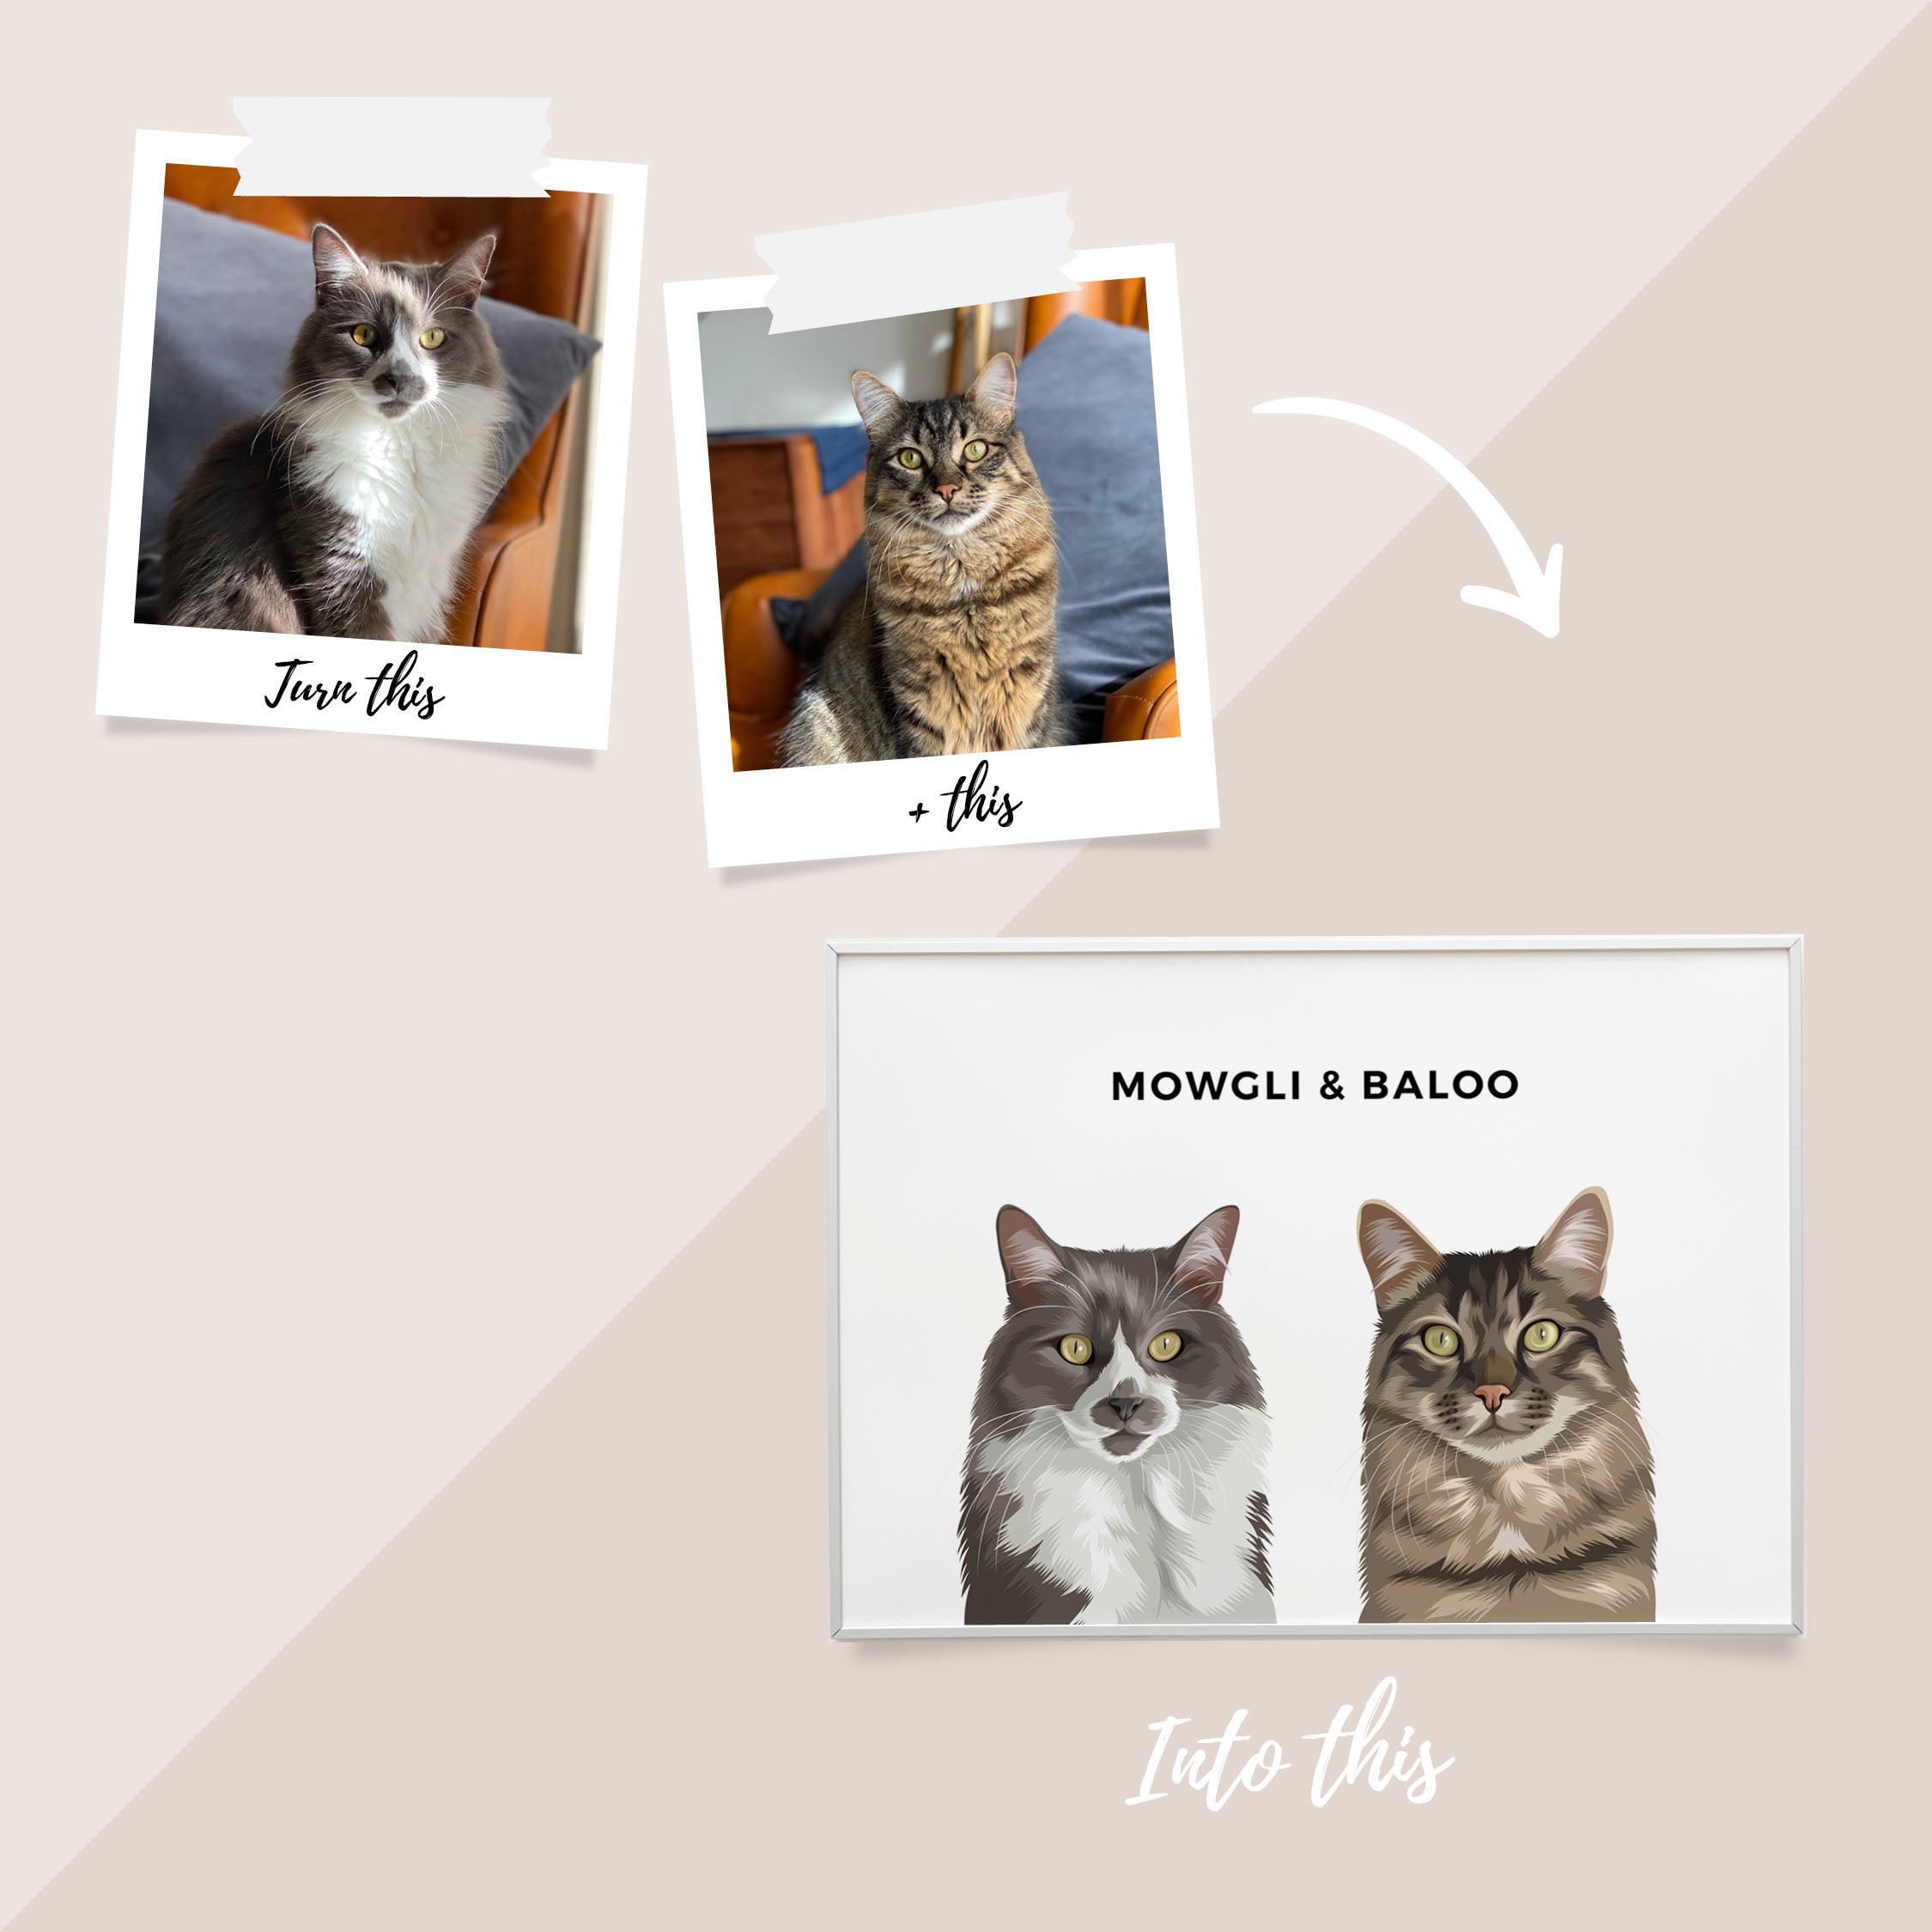 Pet Portrait - Framed Print (2 Pets)